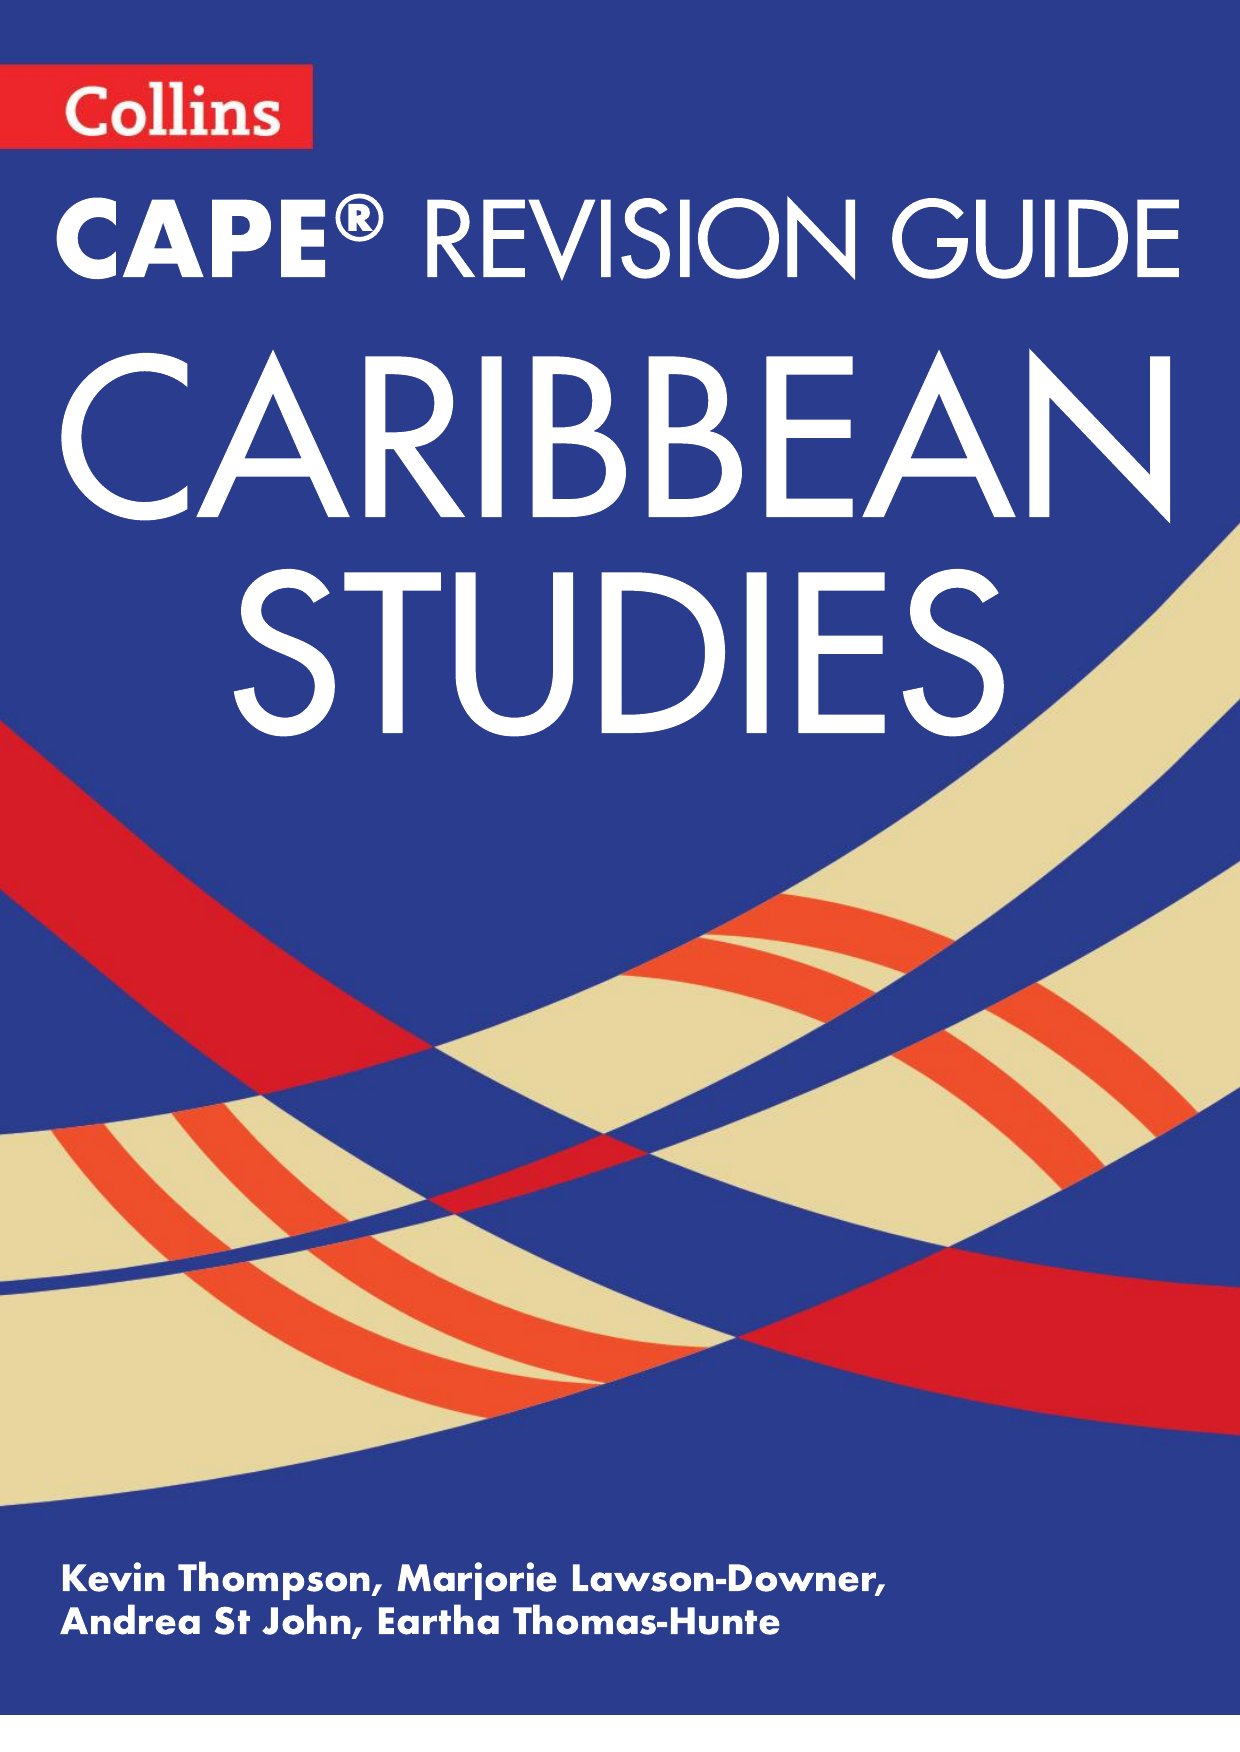 Collins - CAPE Revision Guide - Caribbean Studies copy (1)